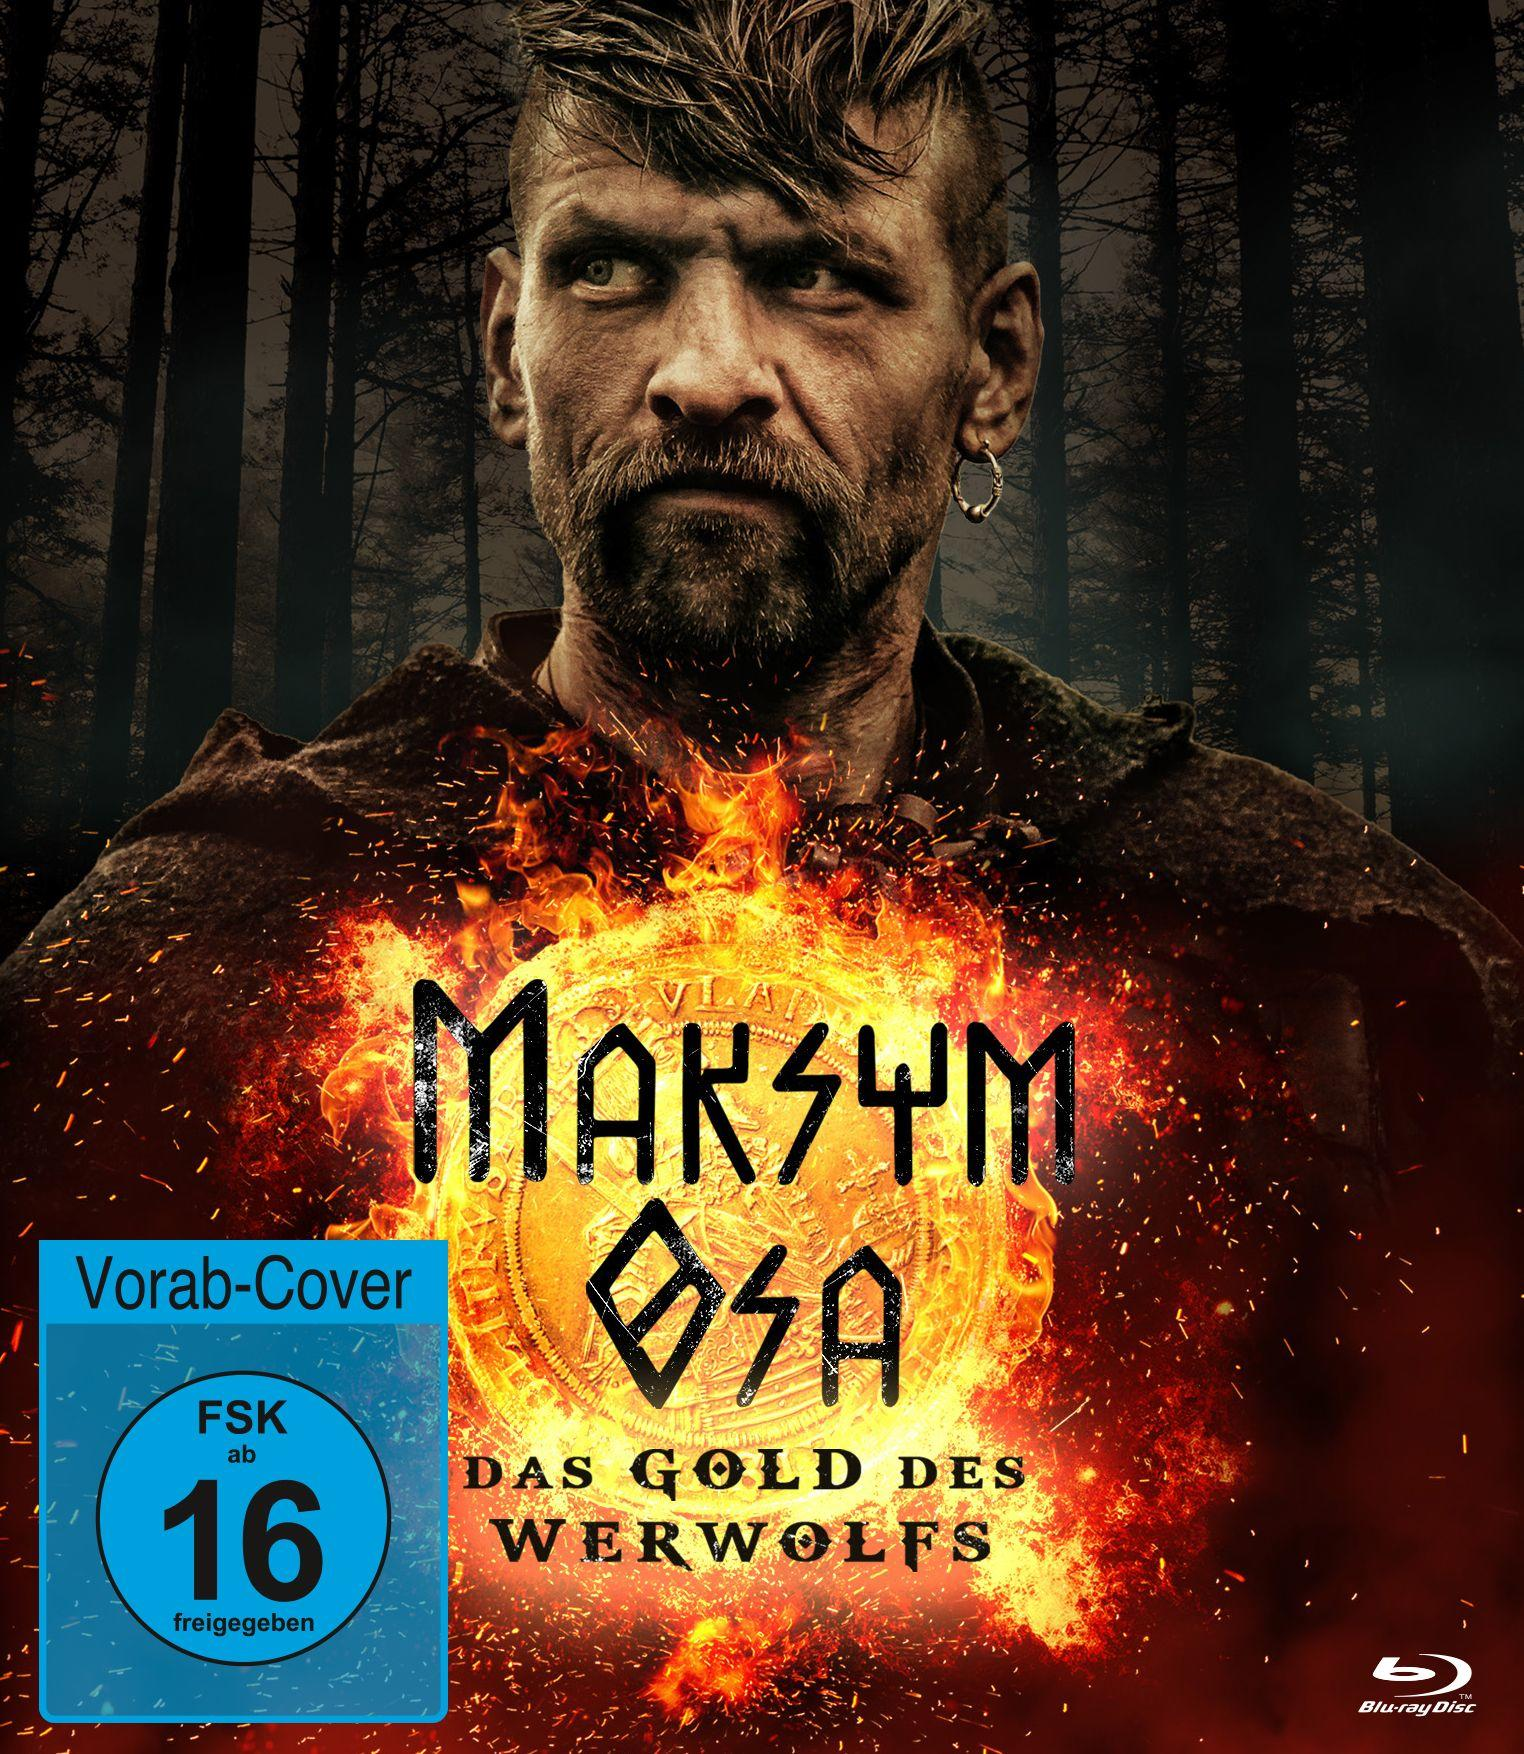 - Maksym Osa Werwolfs Blu-ray Gold des Das